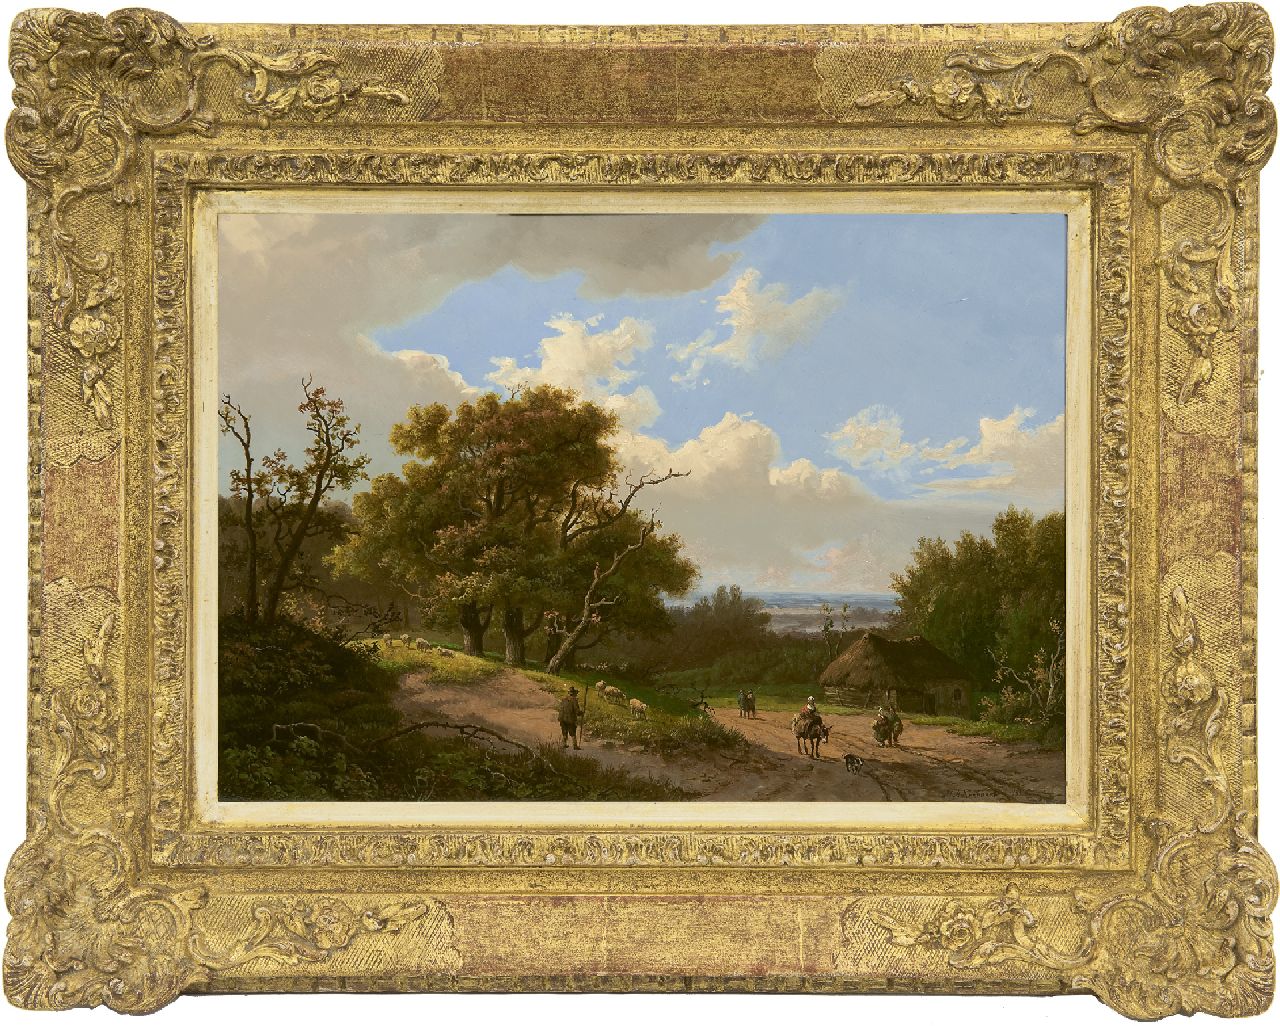 Koekkoek I M.A.  | Marinus Adrianus Koekkoek I | Schilderijen te koop aangeboden | Boslandschap met herder en landvolk, olieverf op paneel 24,5 x 34,9 cm, gesigneerd rechtsonder en gedateerd 1851